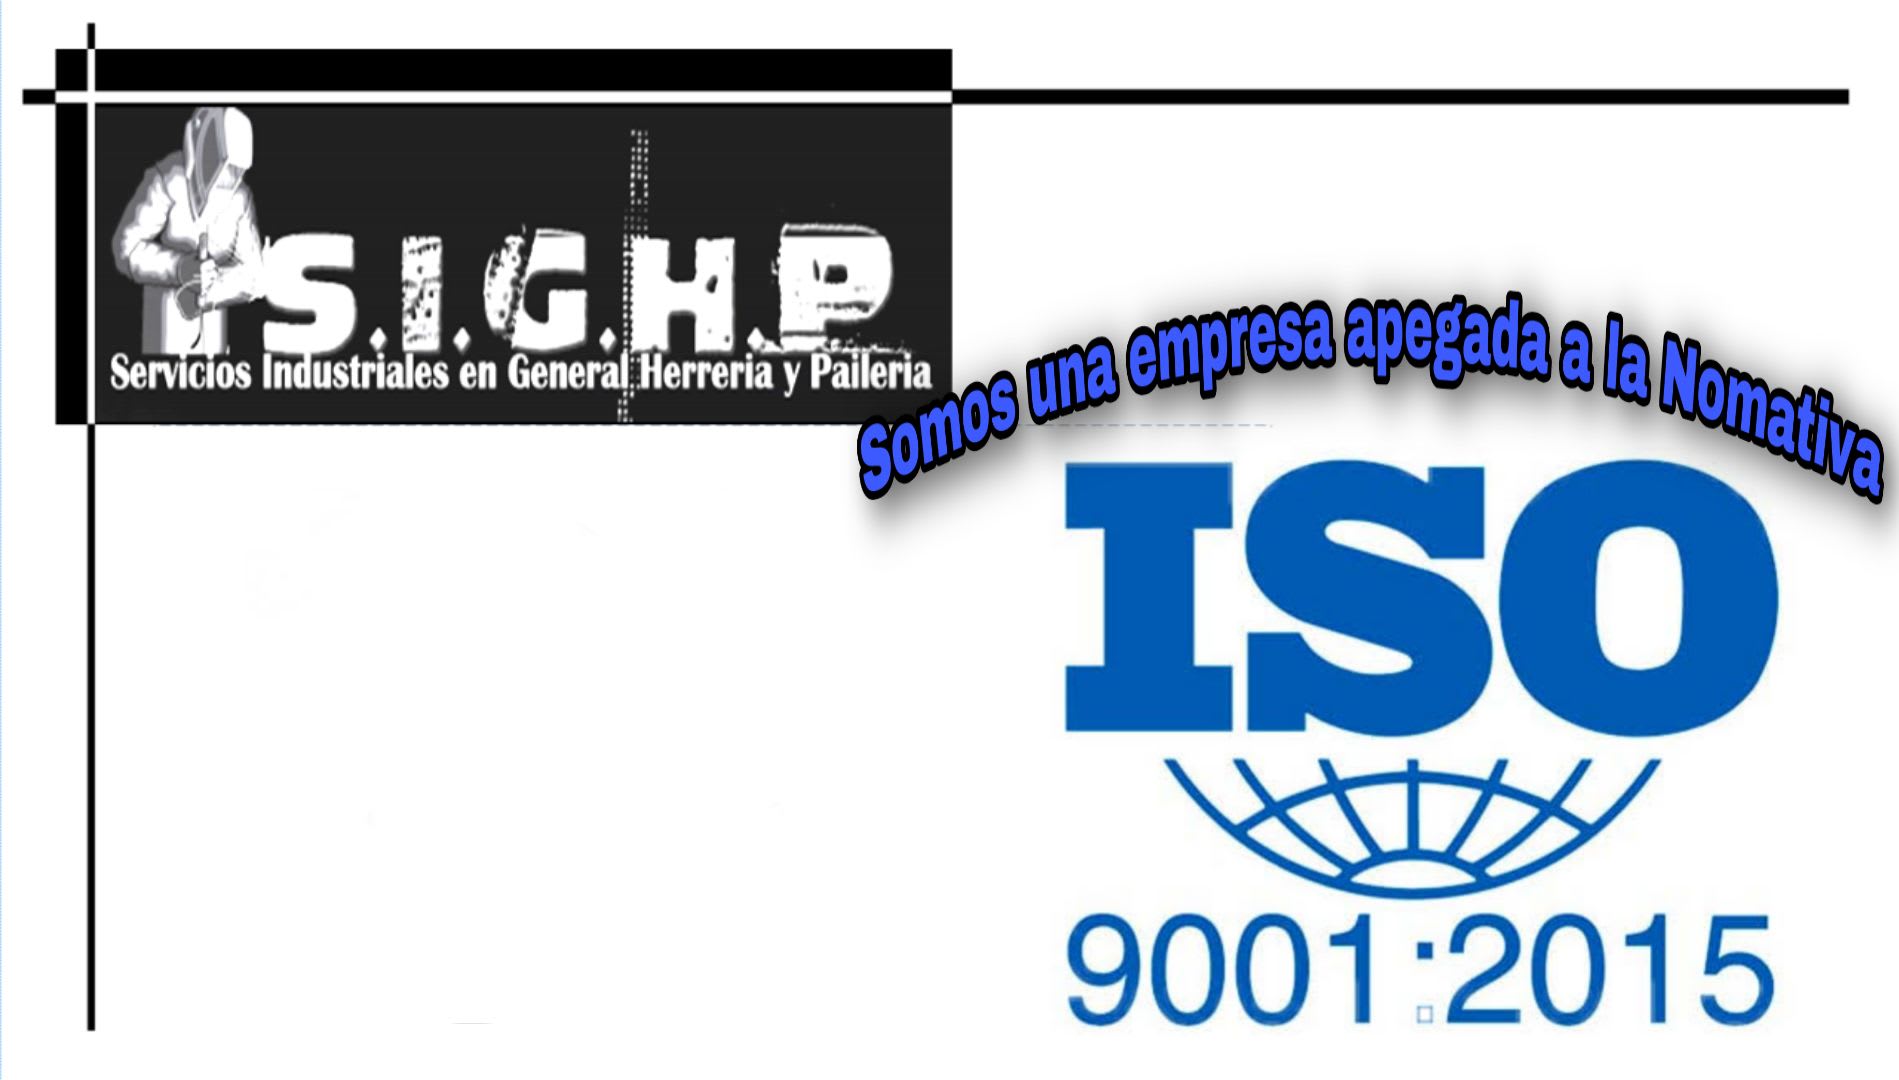 S.I.G.H.P. Servicios Industriales en General Herreria y Paileria